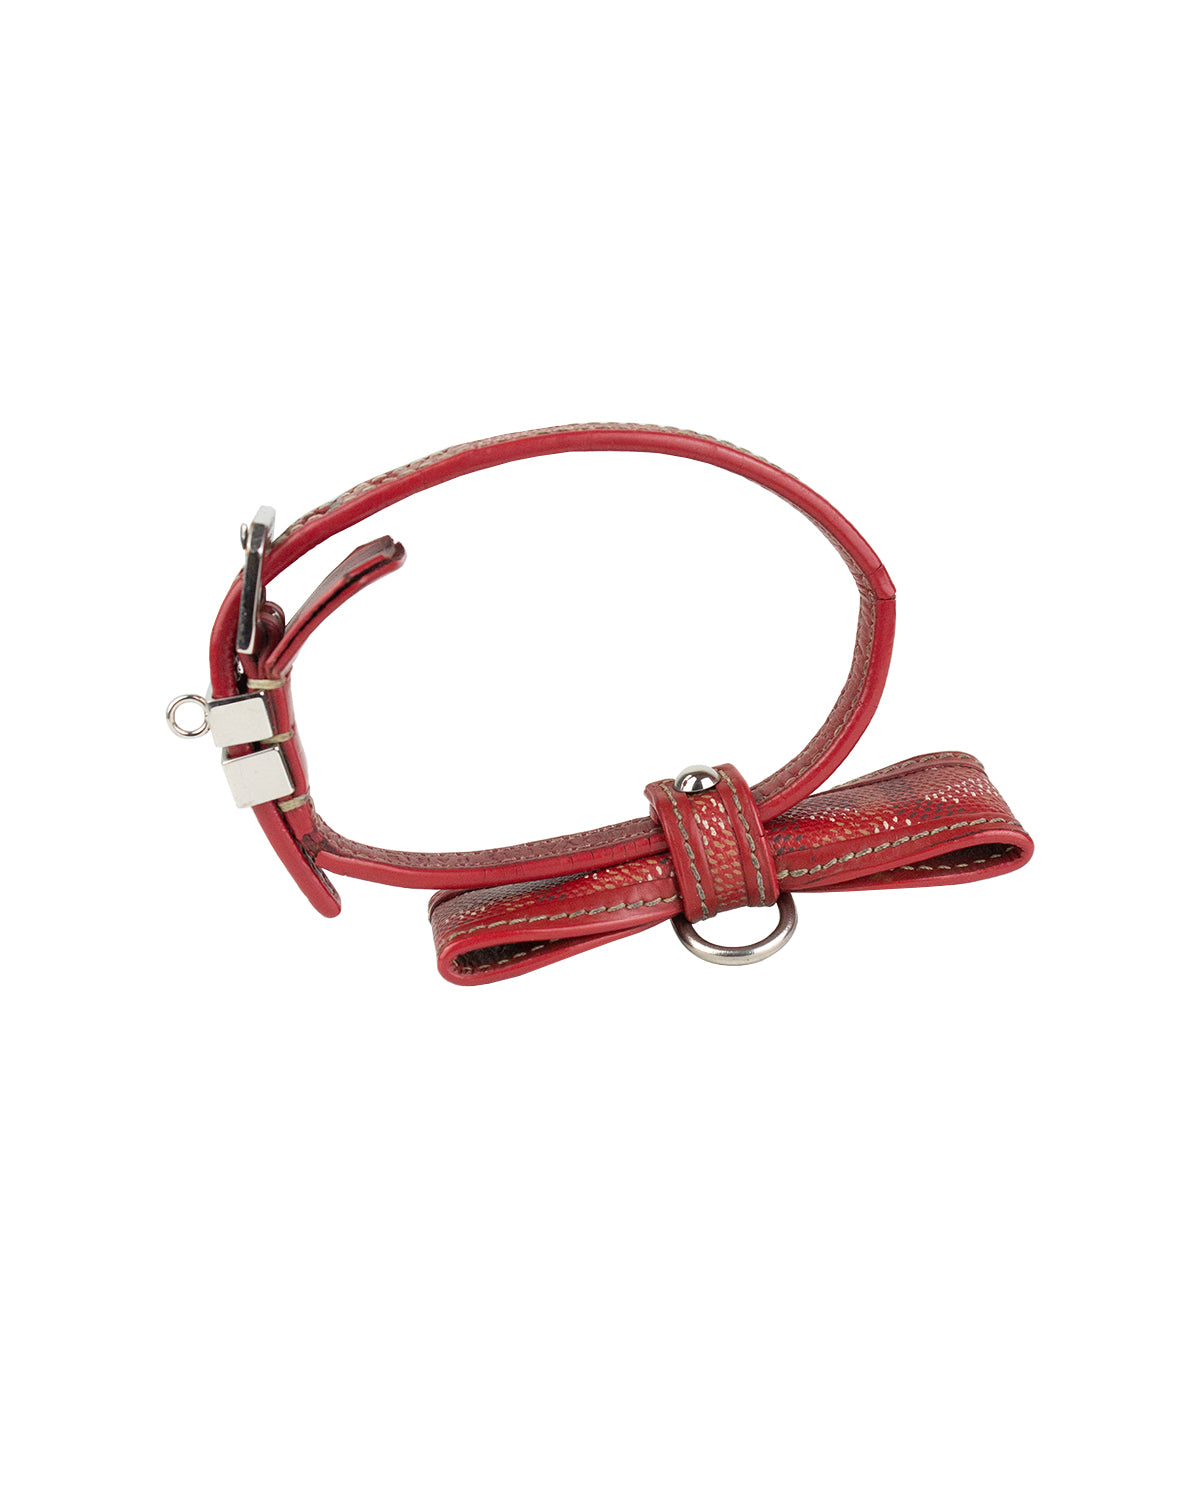 Goyard Dog Collar - For Sale on 1stDibs  goyard dog leash price, dog  goyard collar, goyard dog collar cost